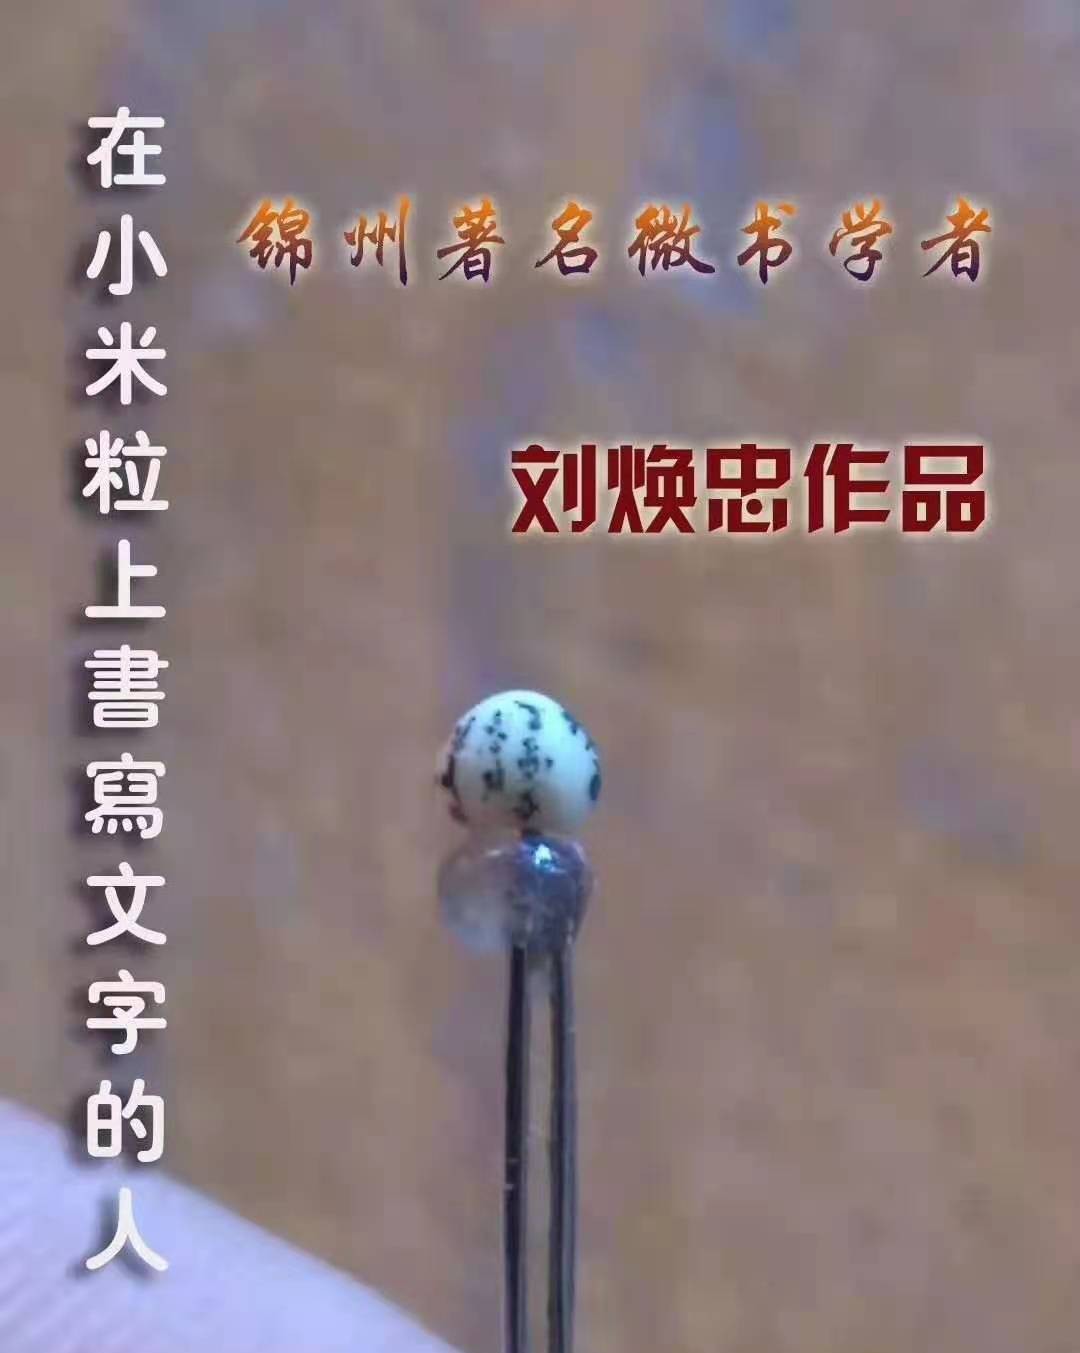 刘焕忠：在小米粒上书写汉字的锦州奇人